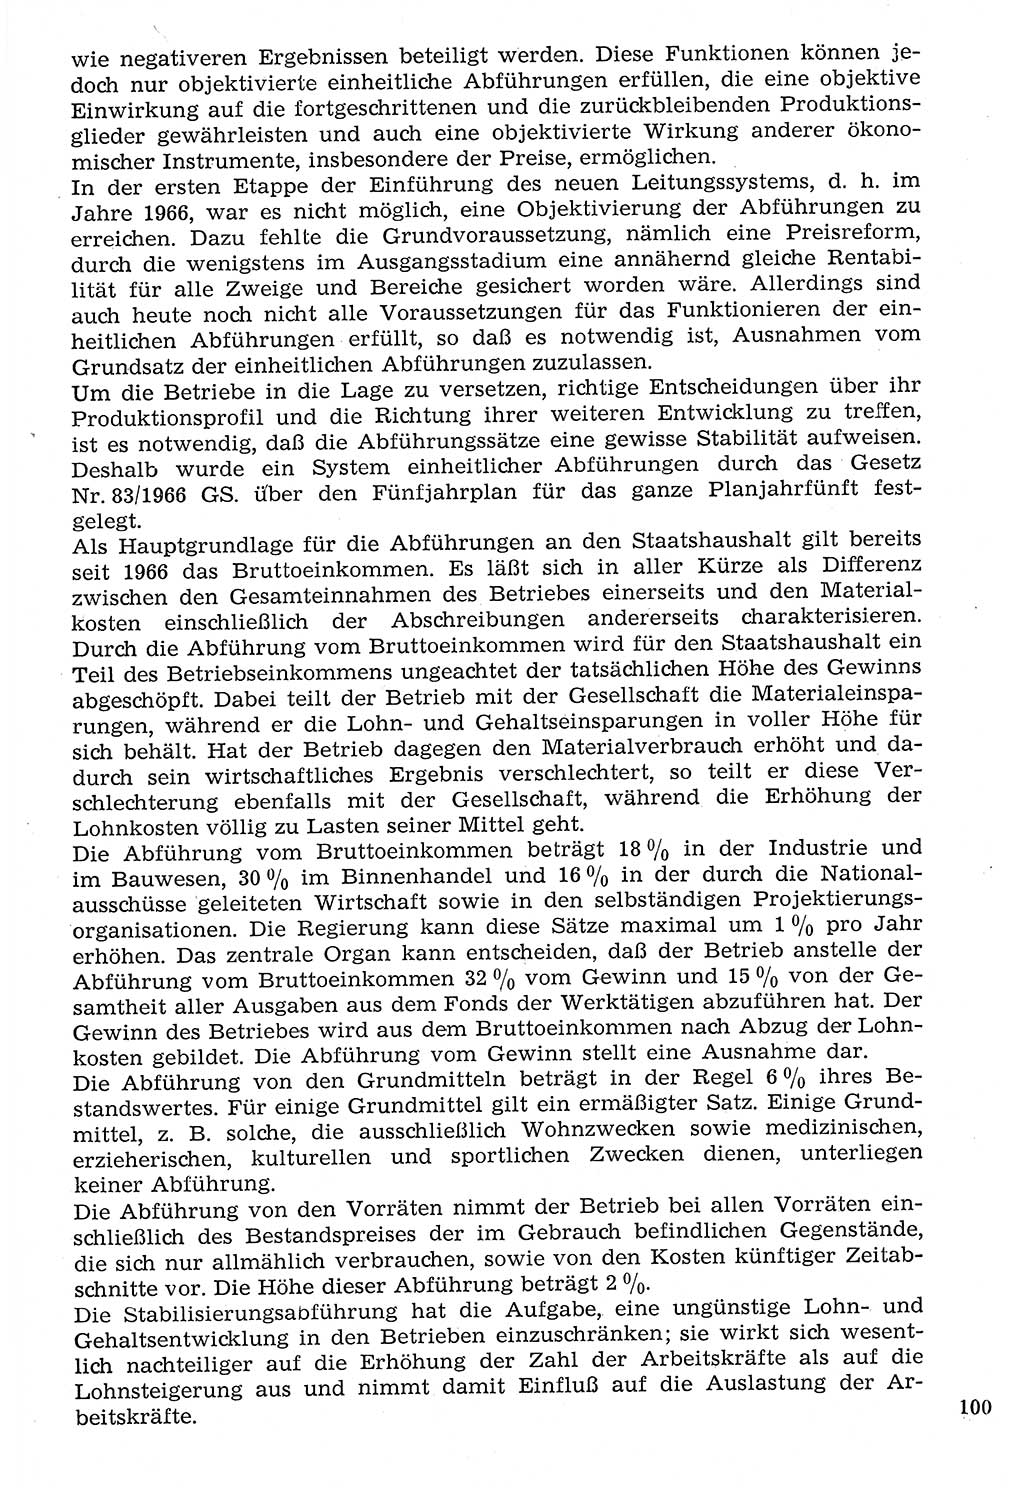 Staat und Recht (StuR), 17. Jahrgang [Deutsche Demokratische Republik (DDR)] 1968, Seite 100 (StuR DDR 1968, S. 100)